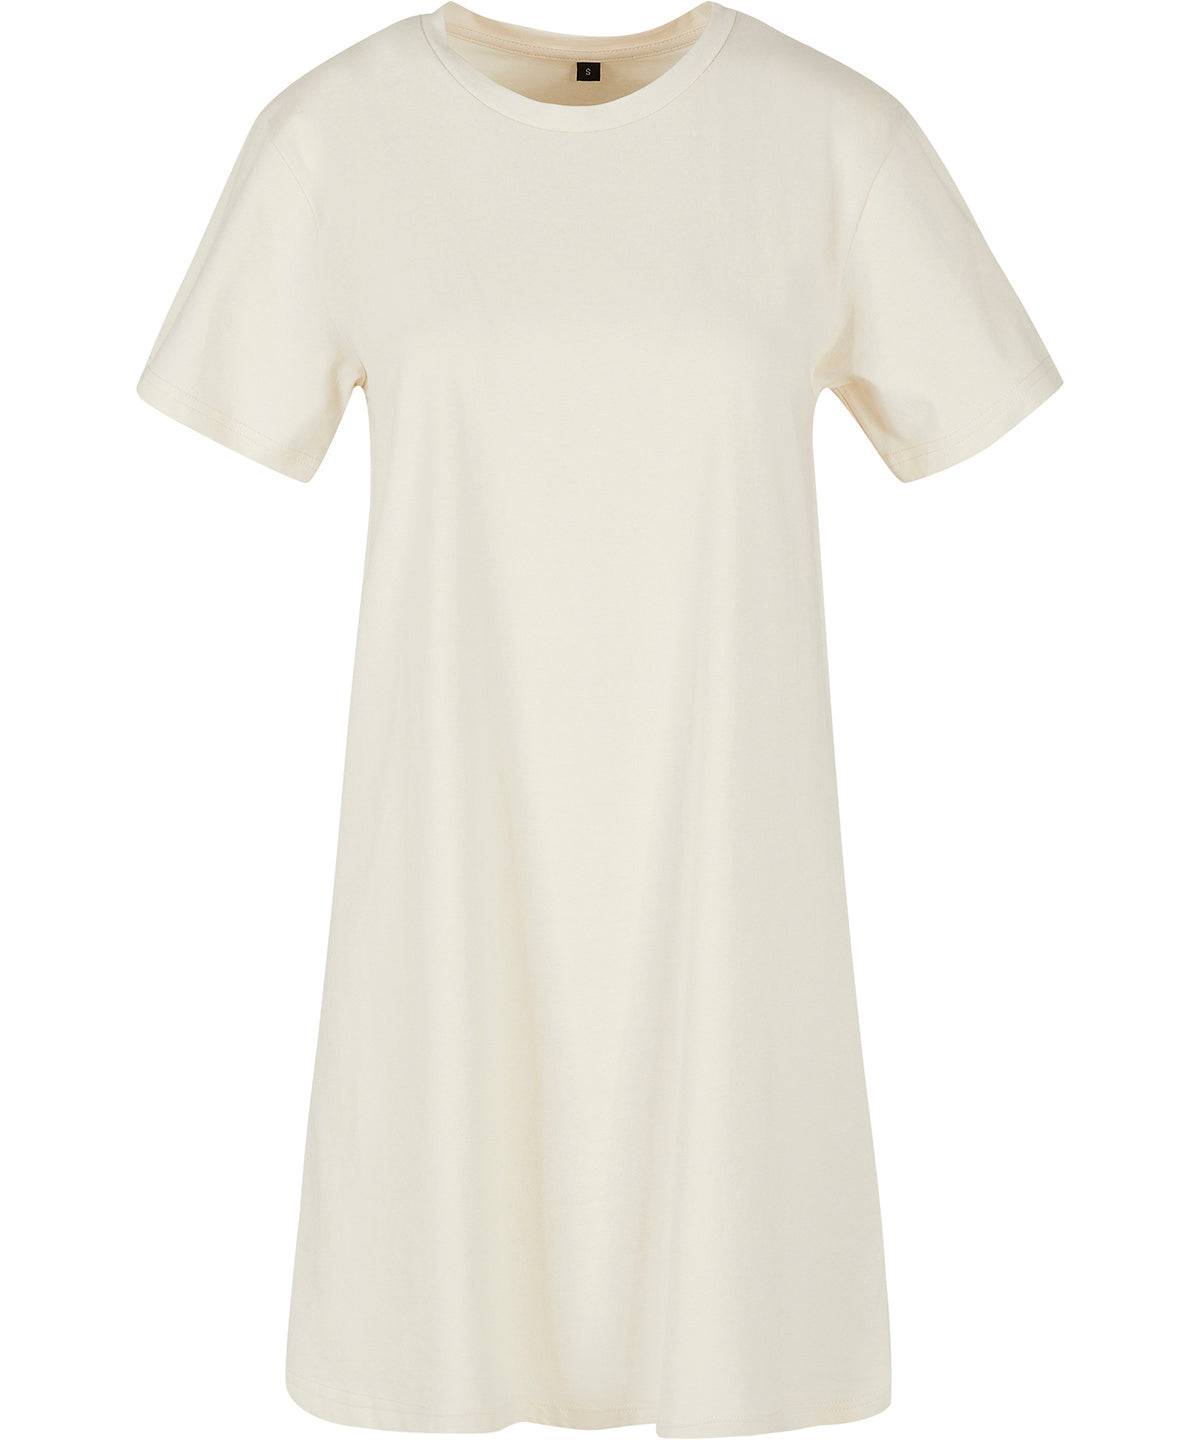 White Sand - Women’s tee dress